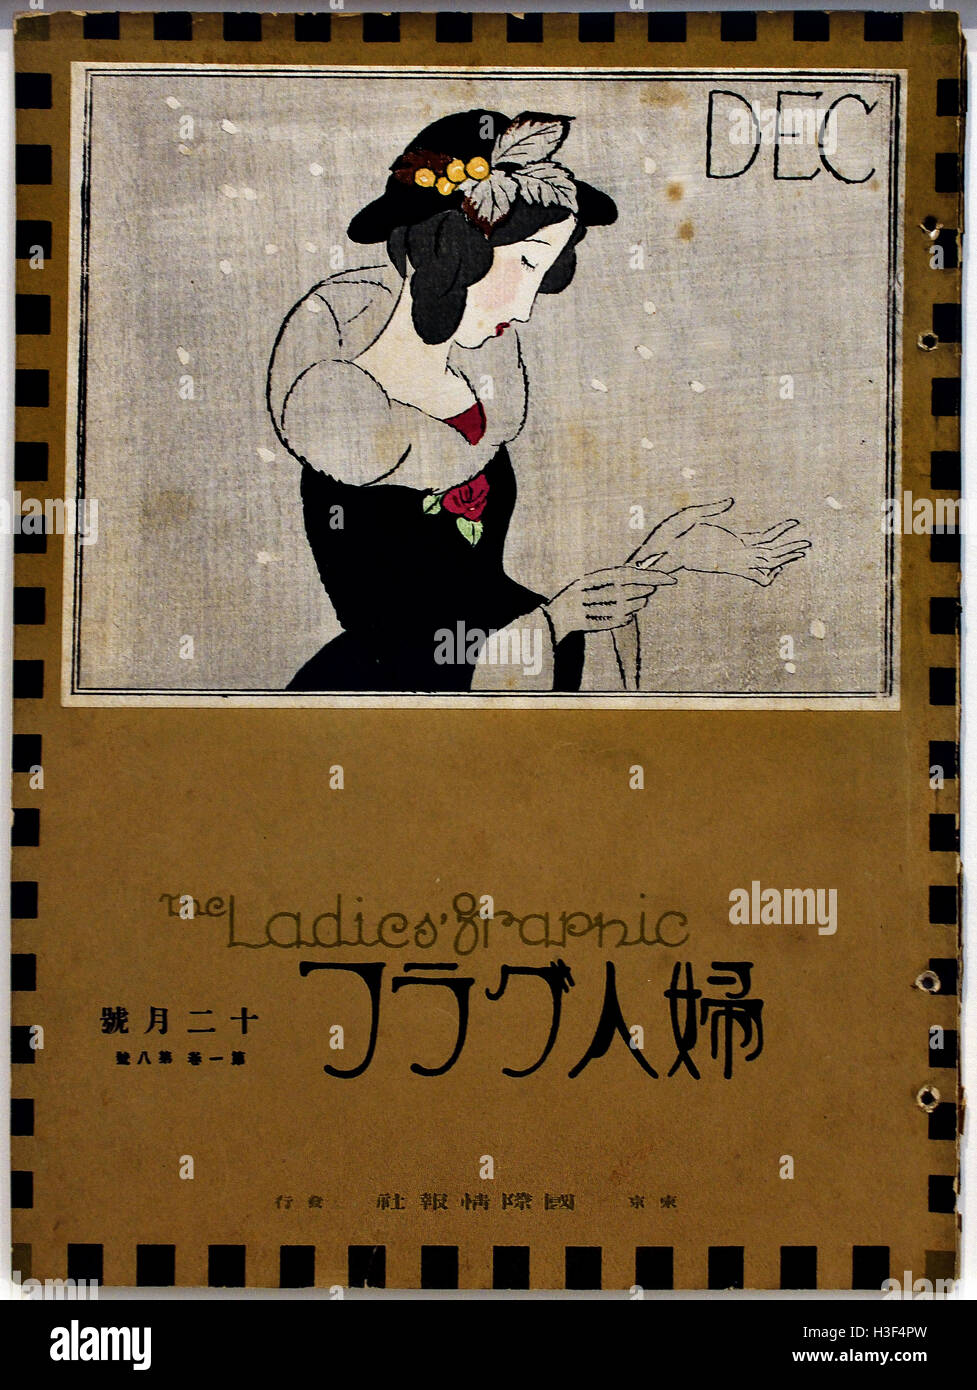 Die Zeitschrift Fujin Gurafu ersten veröffentlicht in kann 1924 Japan durch Takehisa Yumeij 1884-1934 (Farbe Holzschnitt auf Papier, Lithographie, offset - Layout und Cover beruhte auf einer französischen Zeitschrift) Stockfoto